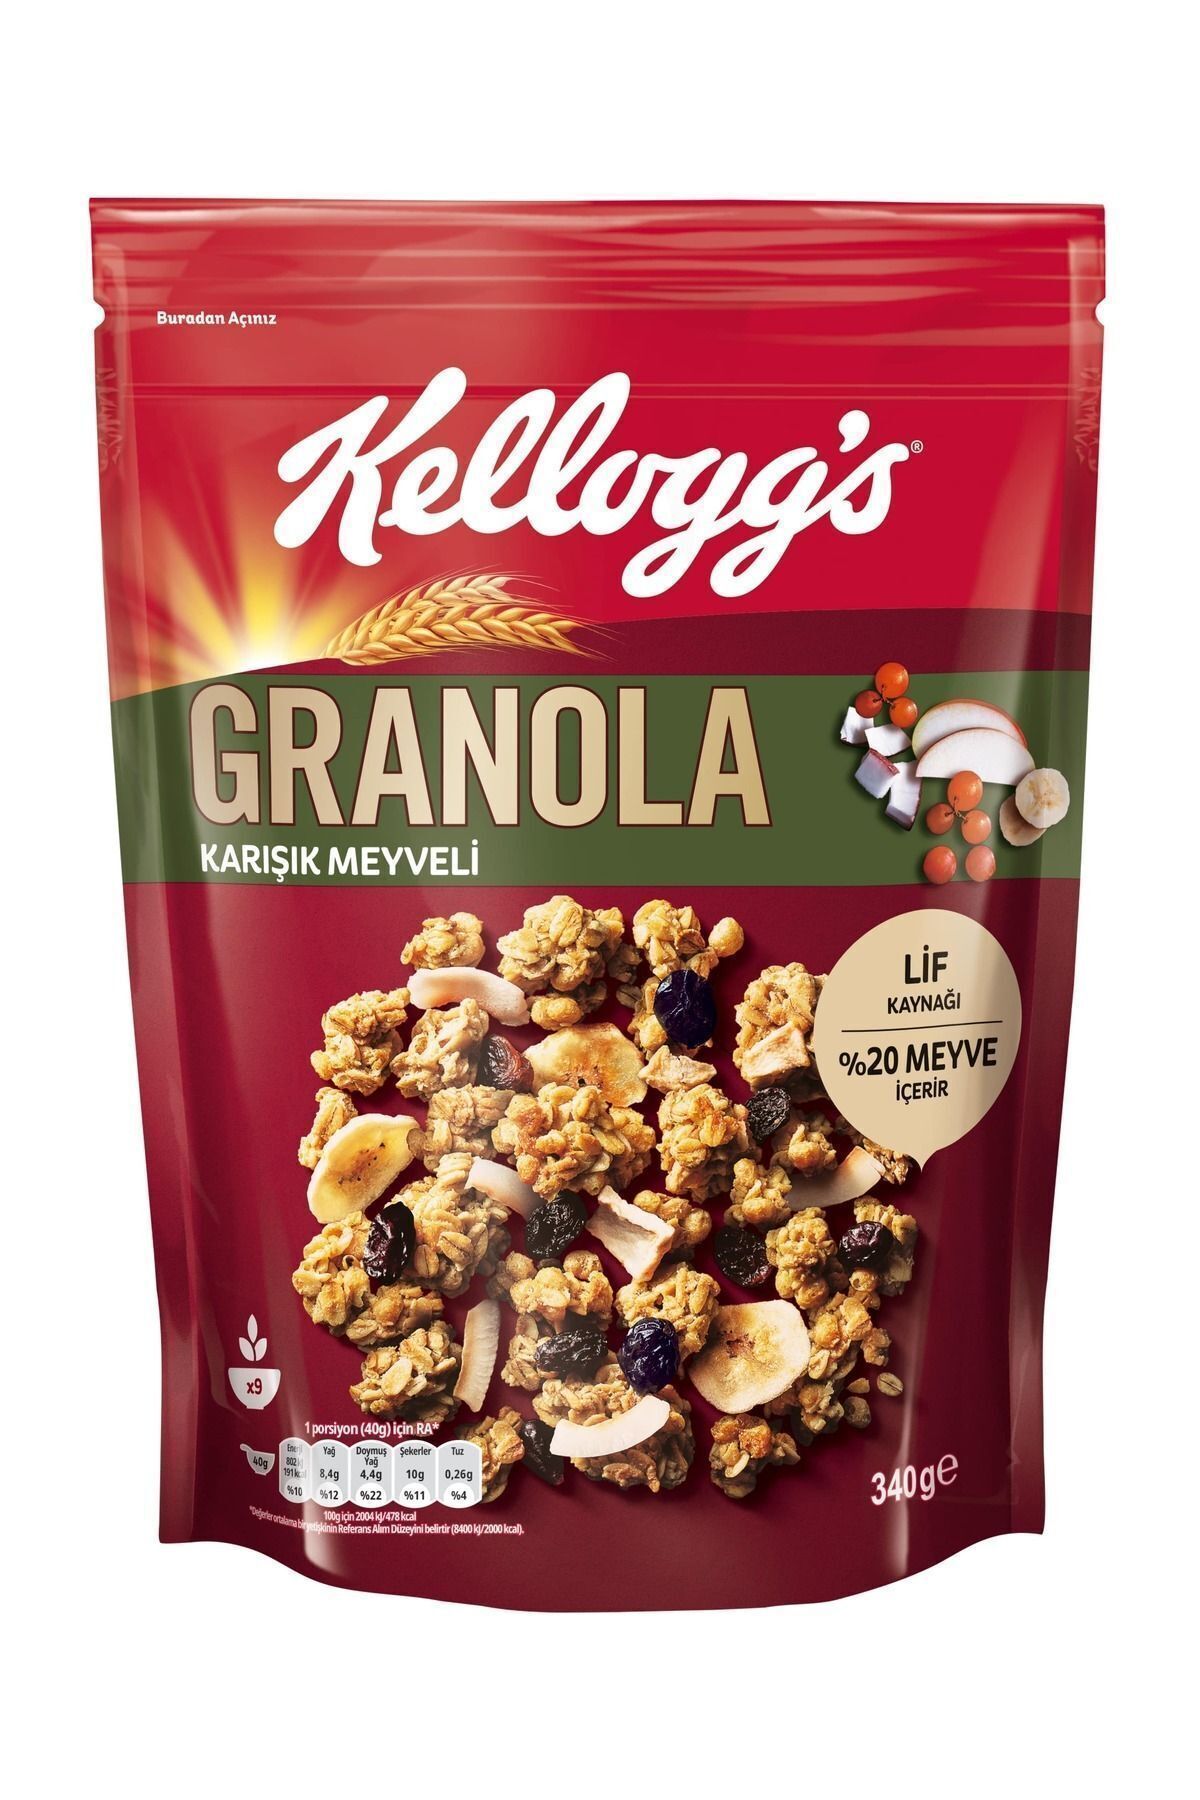 Kellogg's Granola Karışık Meyveli 340 Gr, %45 Yulaf Içerir, Lif Kaynağı, %20 Kurutulmuş Meyve